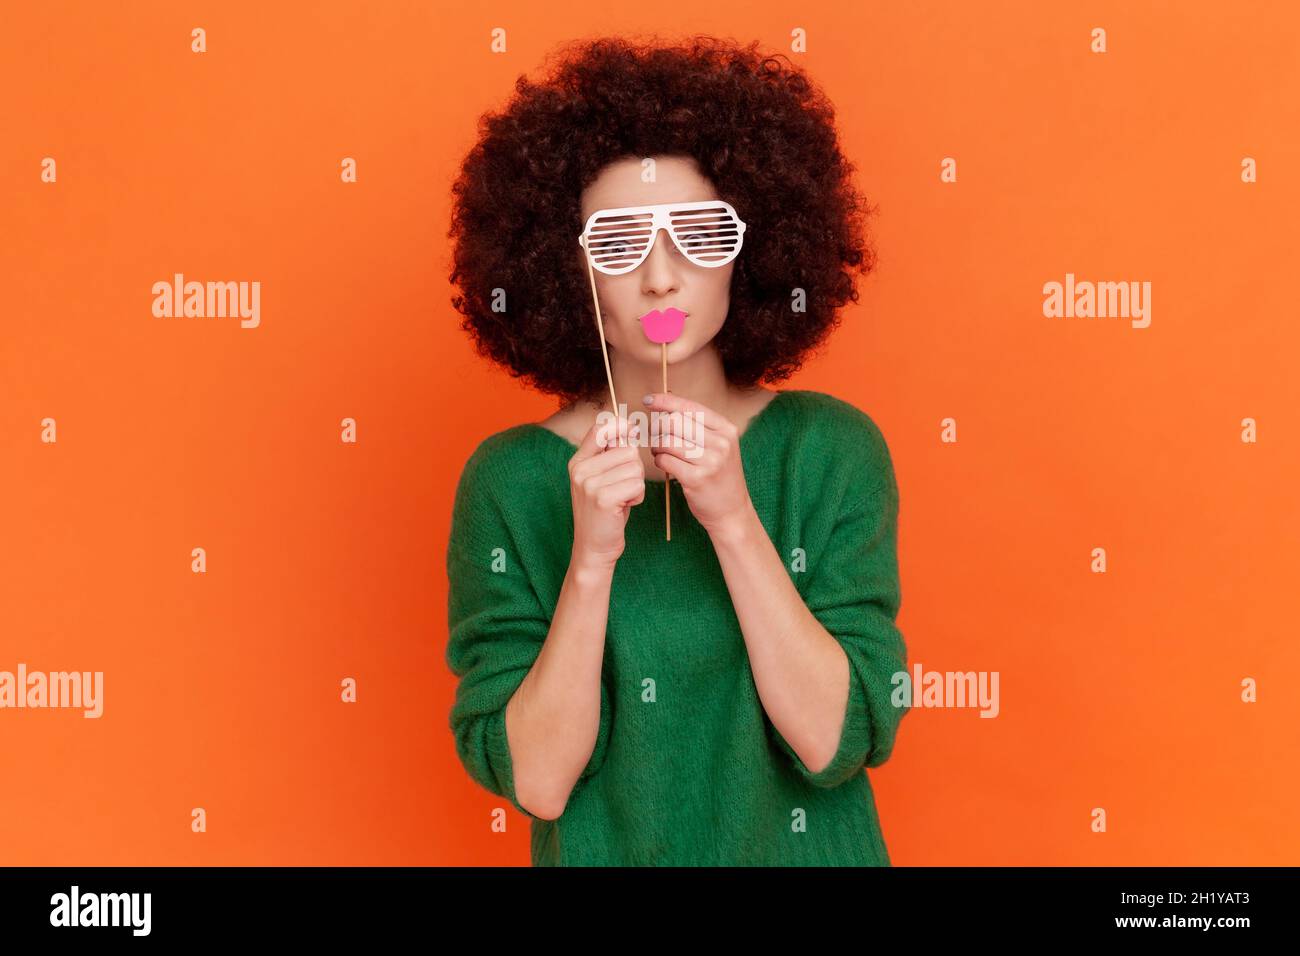 Lustige Frau mit Afro-Frisur trägt einen grünen Pullover im Casual-Stil, der die Augen mit einer Papierbrille bedeckt, rote Lippen auf dem Stock hält und sich maskiert. Innenaufnahme des Studios isoliert auf orangefarbenem Hintergrund. Stockfoto